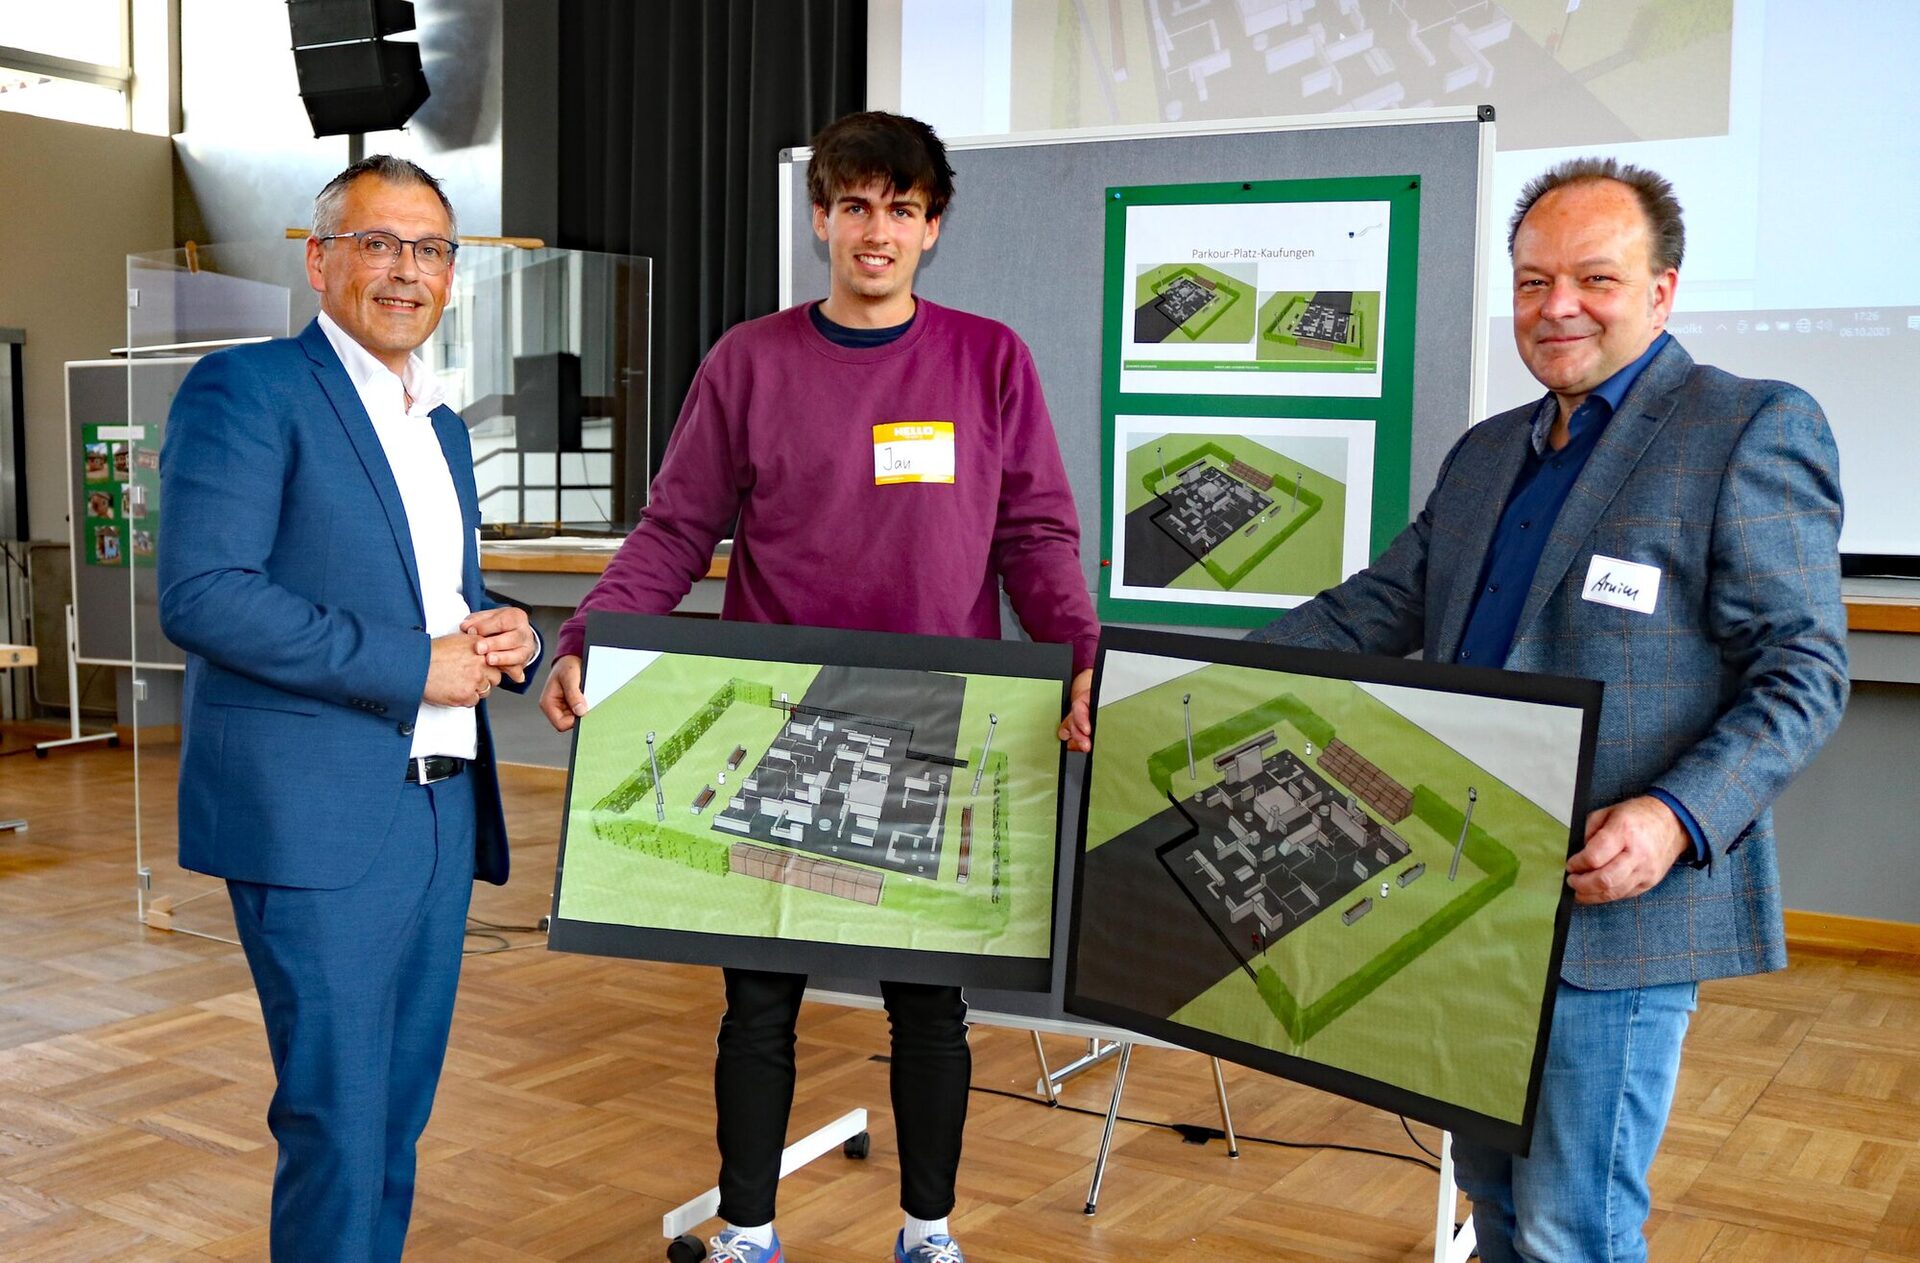 Der Landkreis Kassel unterstützt den Bau der Parkouranlage mit 109.000 Euro aus einem EU-Programm. Im Bild: (v.l.) Landrat Andreas Siebert, Parkoursportler Jan Reinbold und Bürgermeister Arnim Roß.